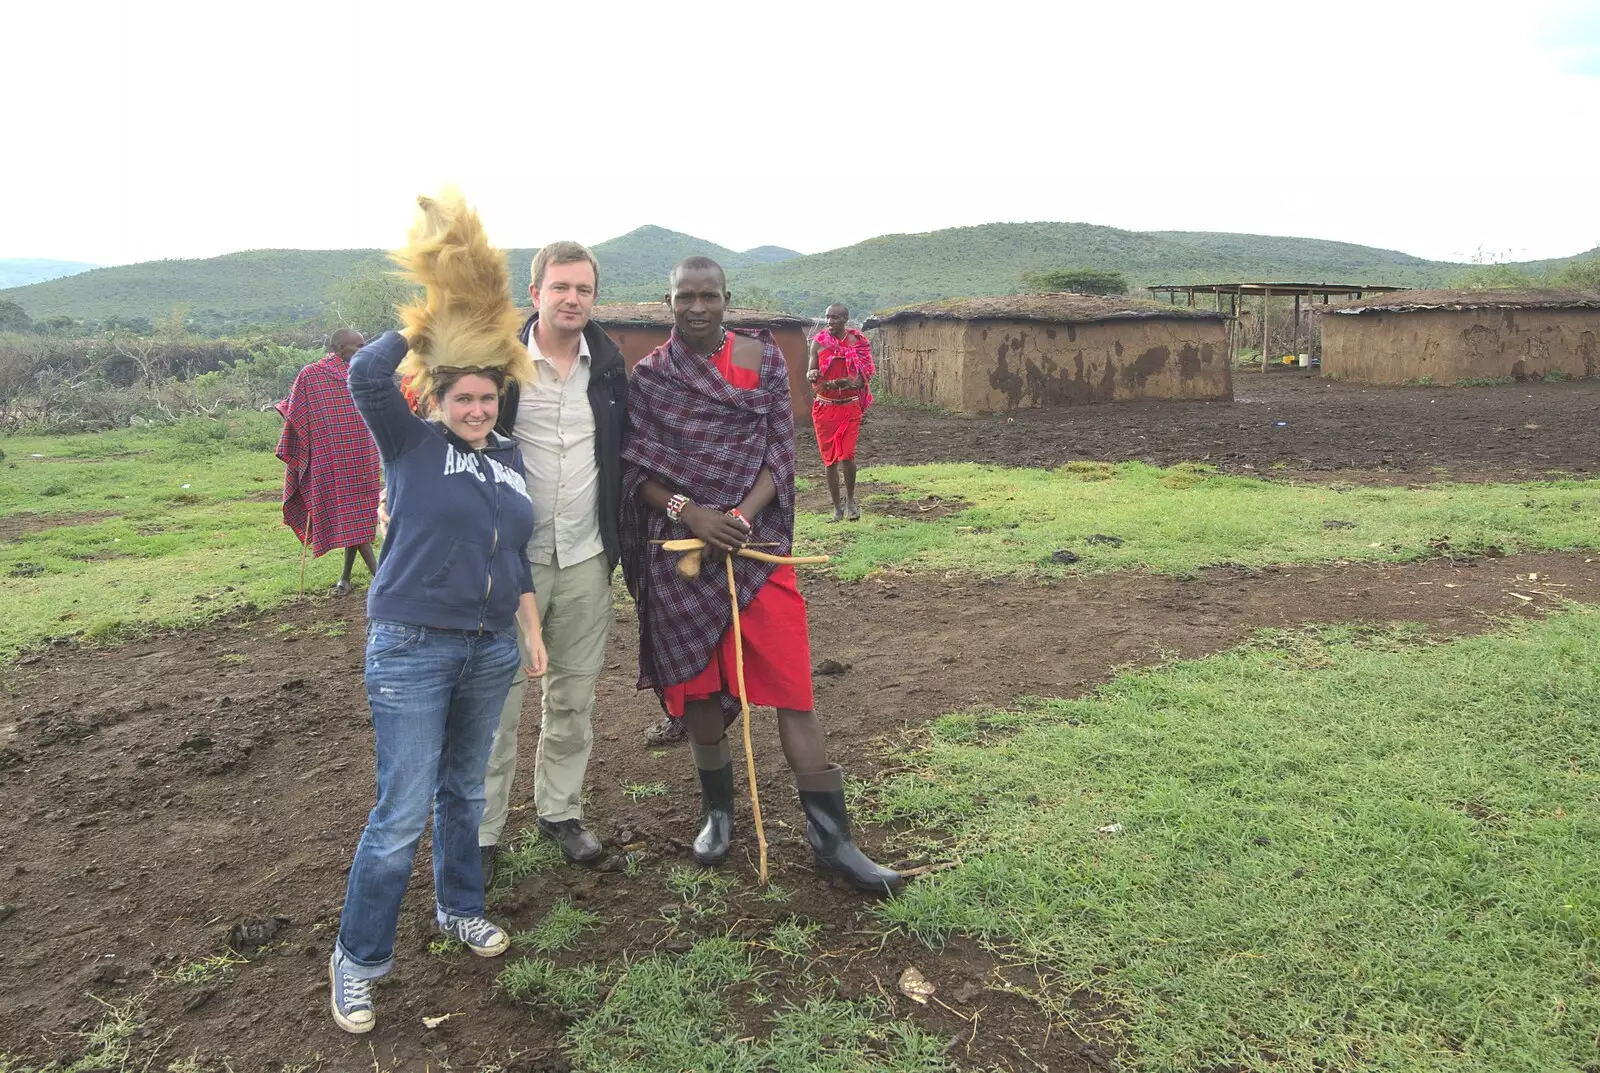 Isobel joins in, from Maasai Mara Safari and a Maasai Village, Ololaimutia, Kenya - 5th November 2010